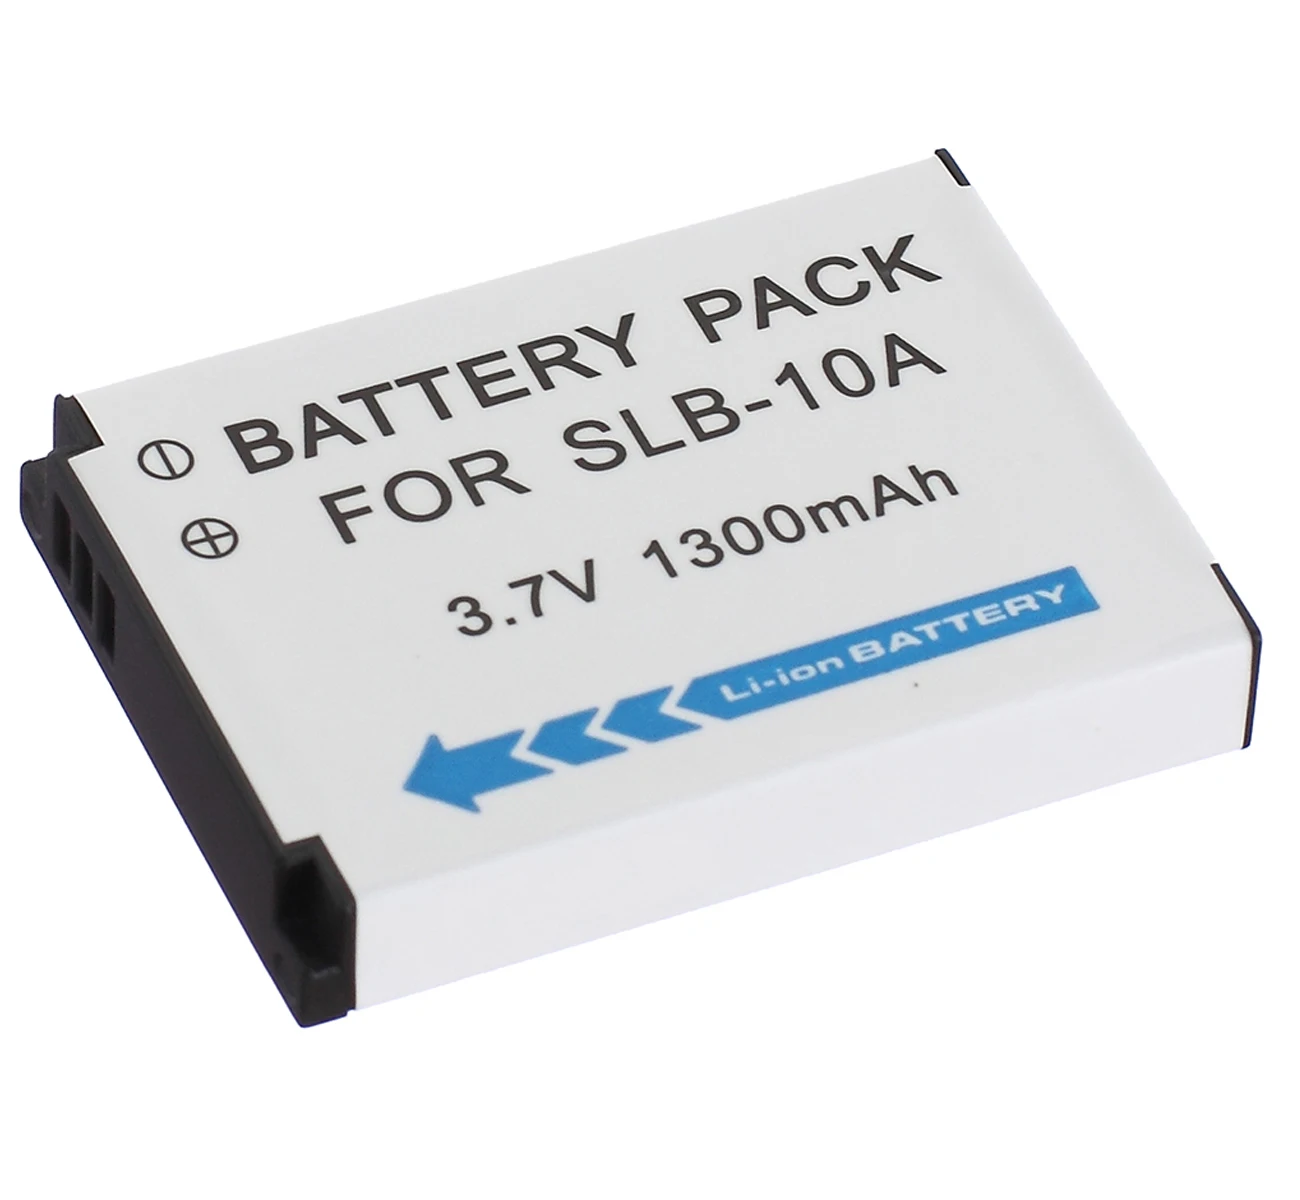 

Battery Pack for Samsung WB150, WB151, WB151F, WB152F, WB200F, WB201F, WB202F, WB250F, WB251F, WB252F, WB280F Digital Camera